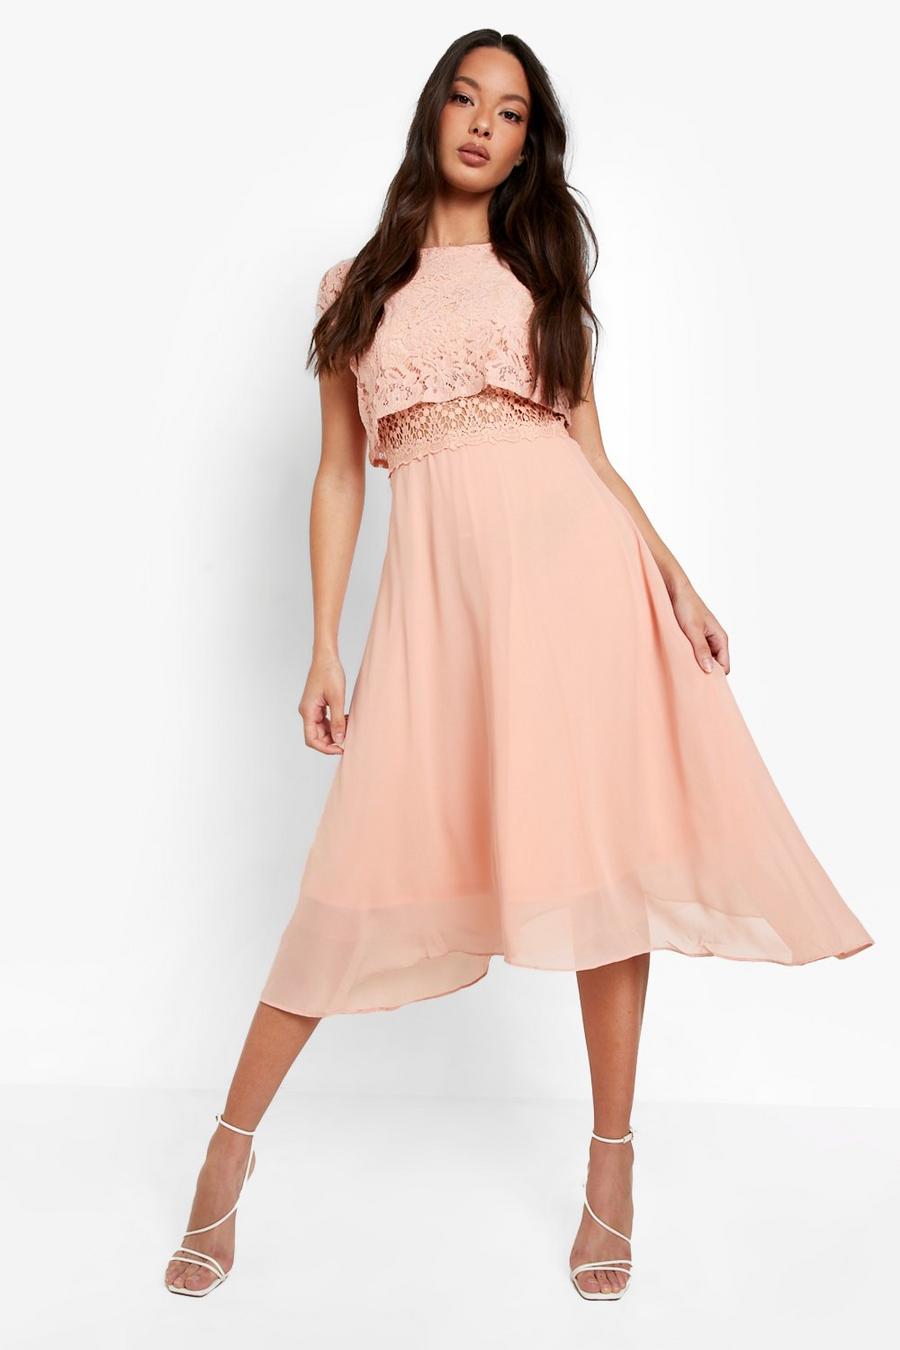 סמוק rosa שמלת סקייטר מבד שיפון עם טופ תחרה